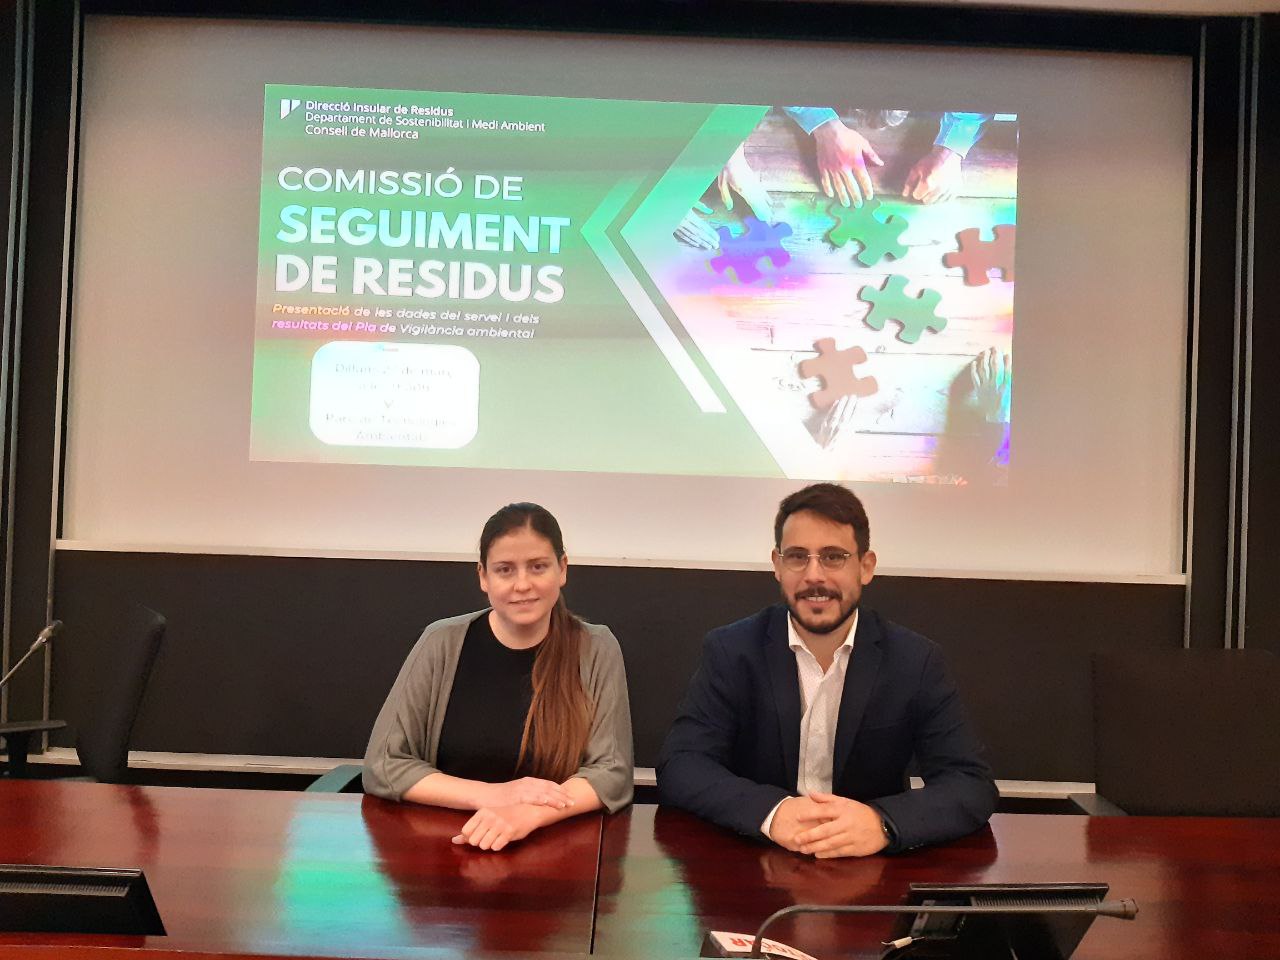 La vicepresidenta i consellera de Sostenibilitat i Medi Ambient, Aurora Ribot, i el director insular de Residus, Juan Carrasco